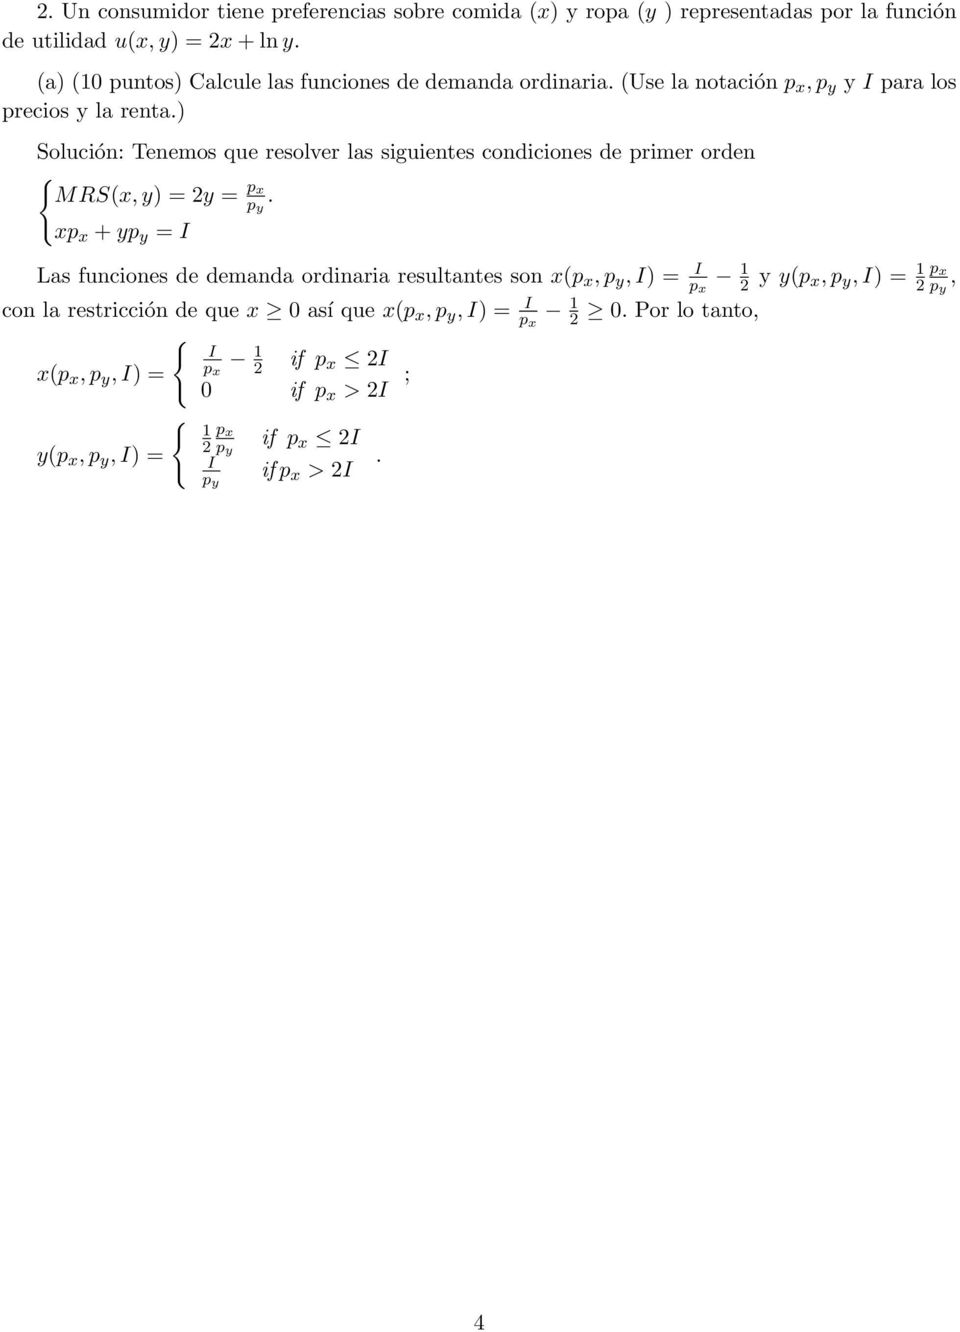 ) Tenemos que resolver las siguientes condiciones de primer orden MRS(x, y) = y = p y.